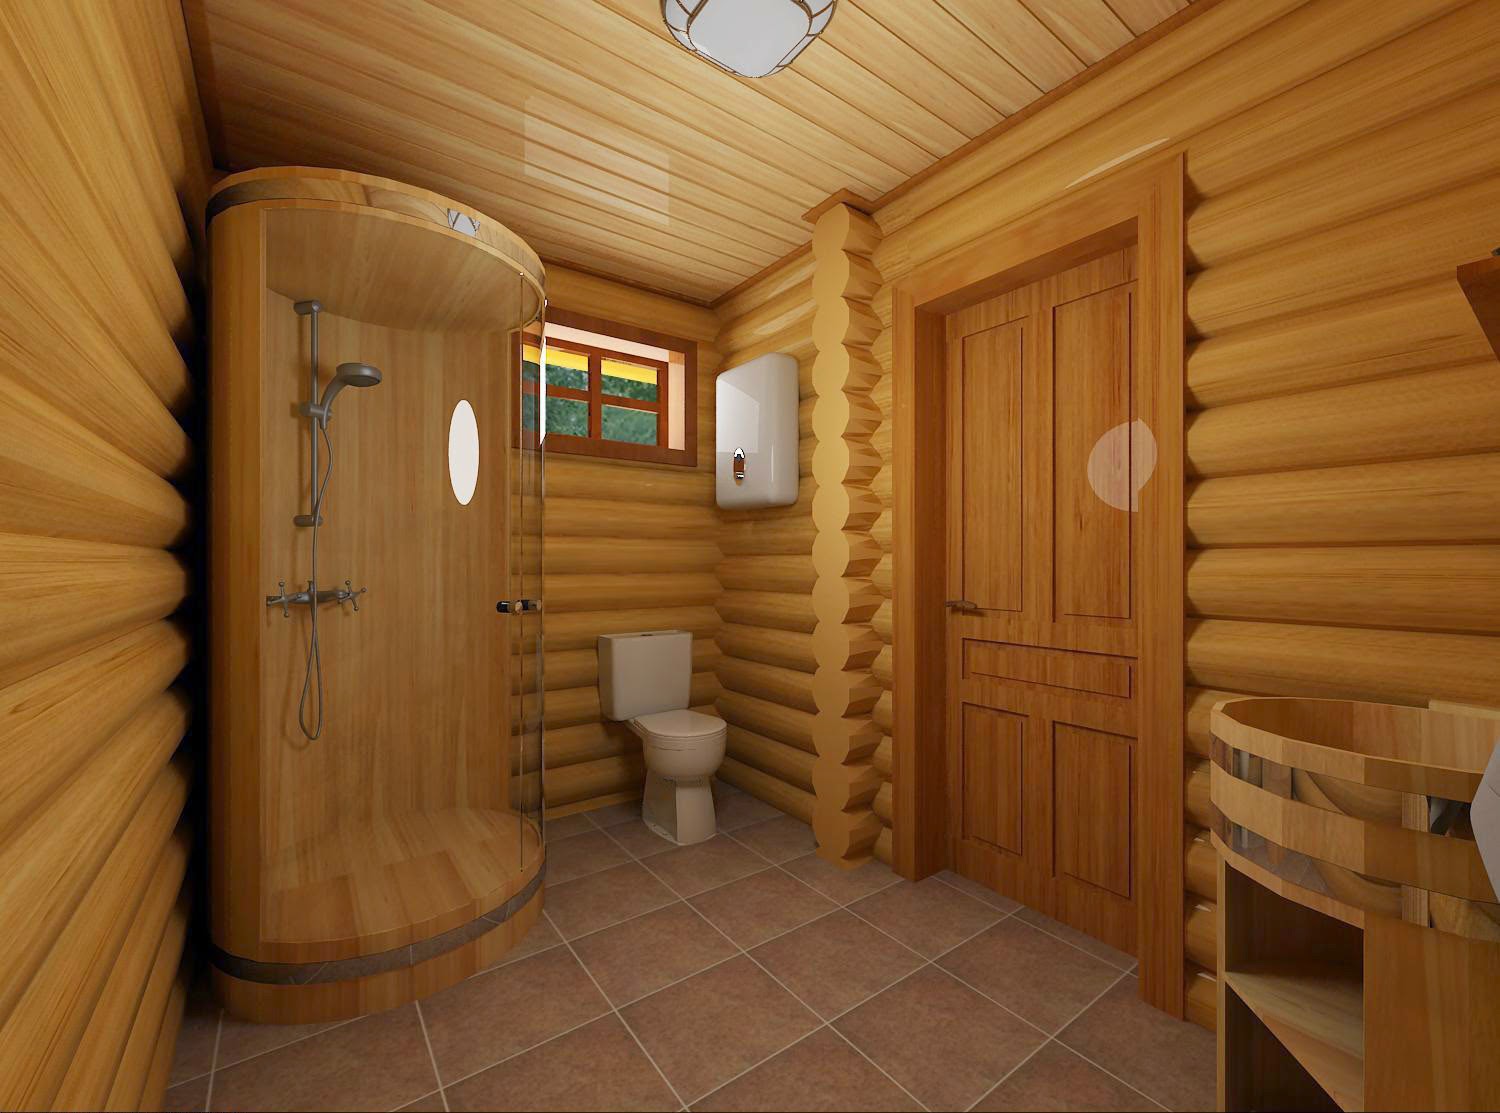 Санузел в деревянном доме: фото, видео обустройства
санузел в деревянном доме: фото, видео обустройства